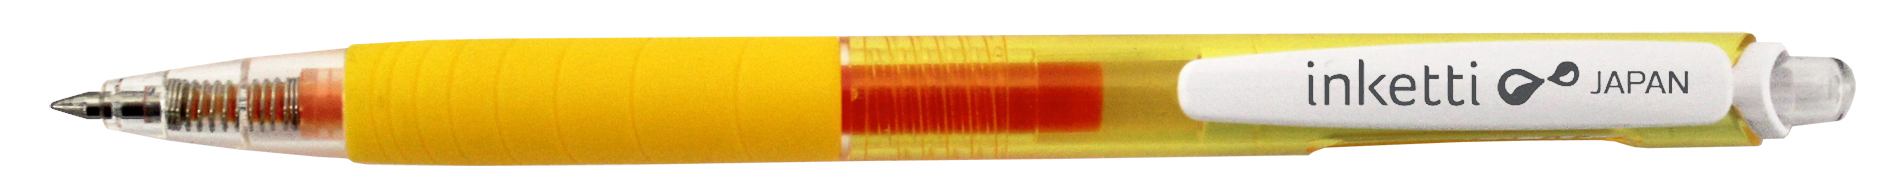 Pix cu gel Penac Inketti, rubber grip, 0.5mm, corp galben transparent - scriere galbena